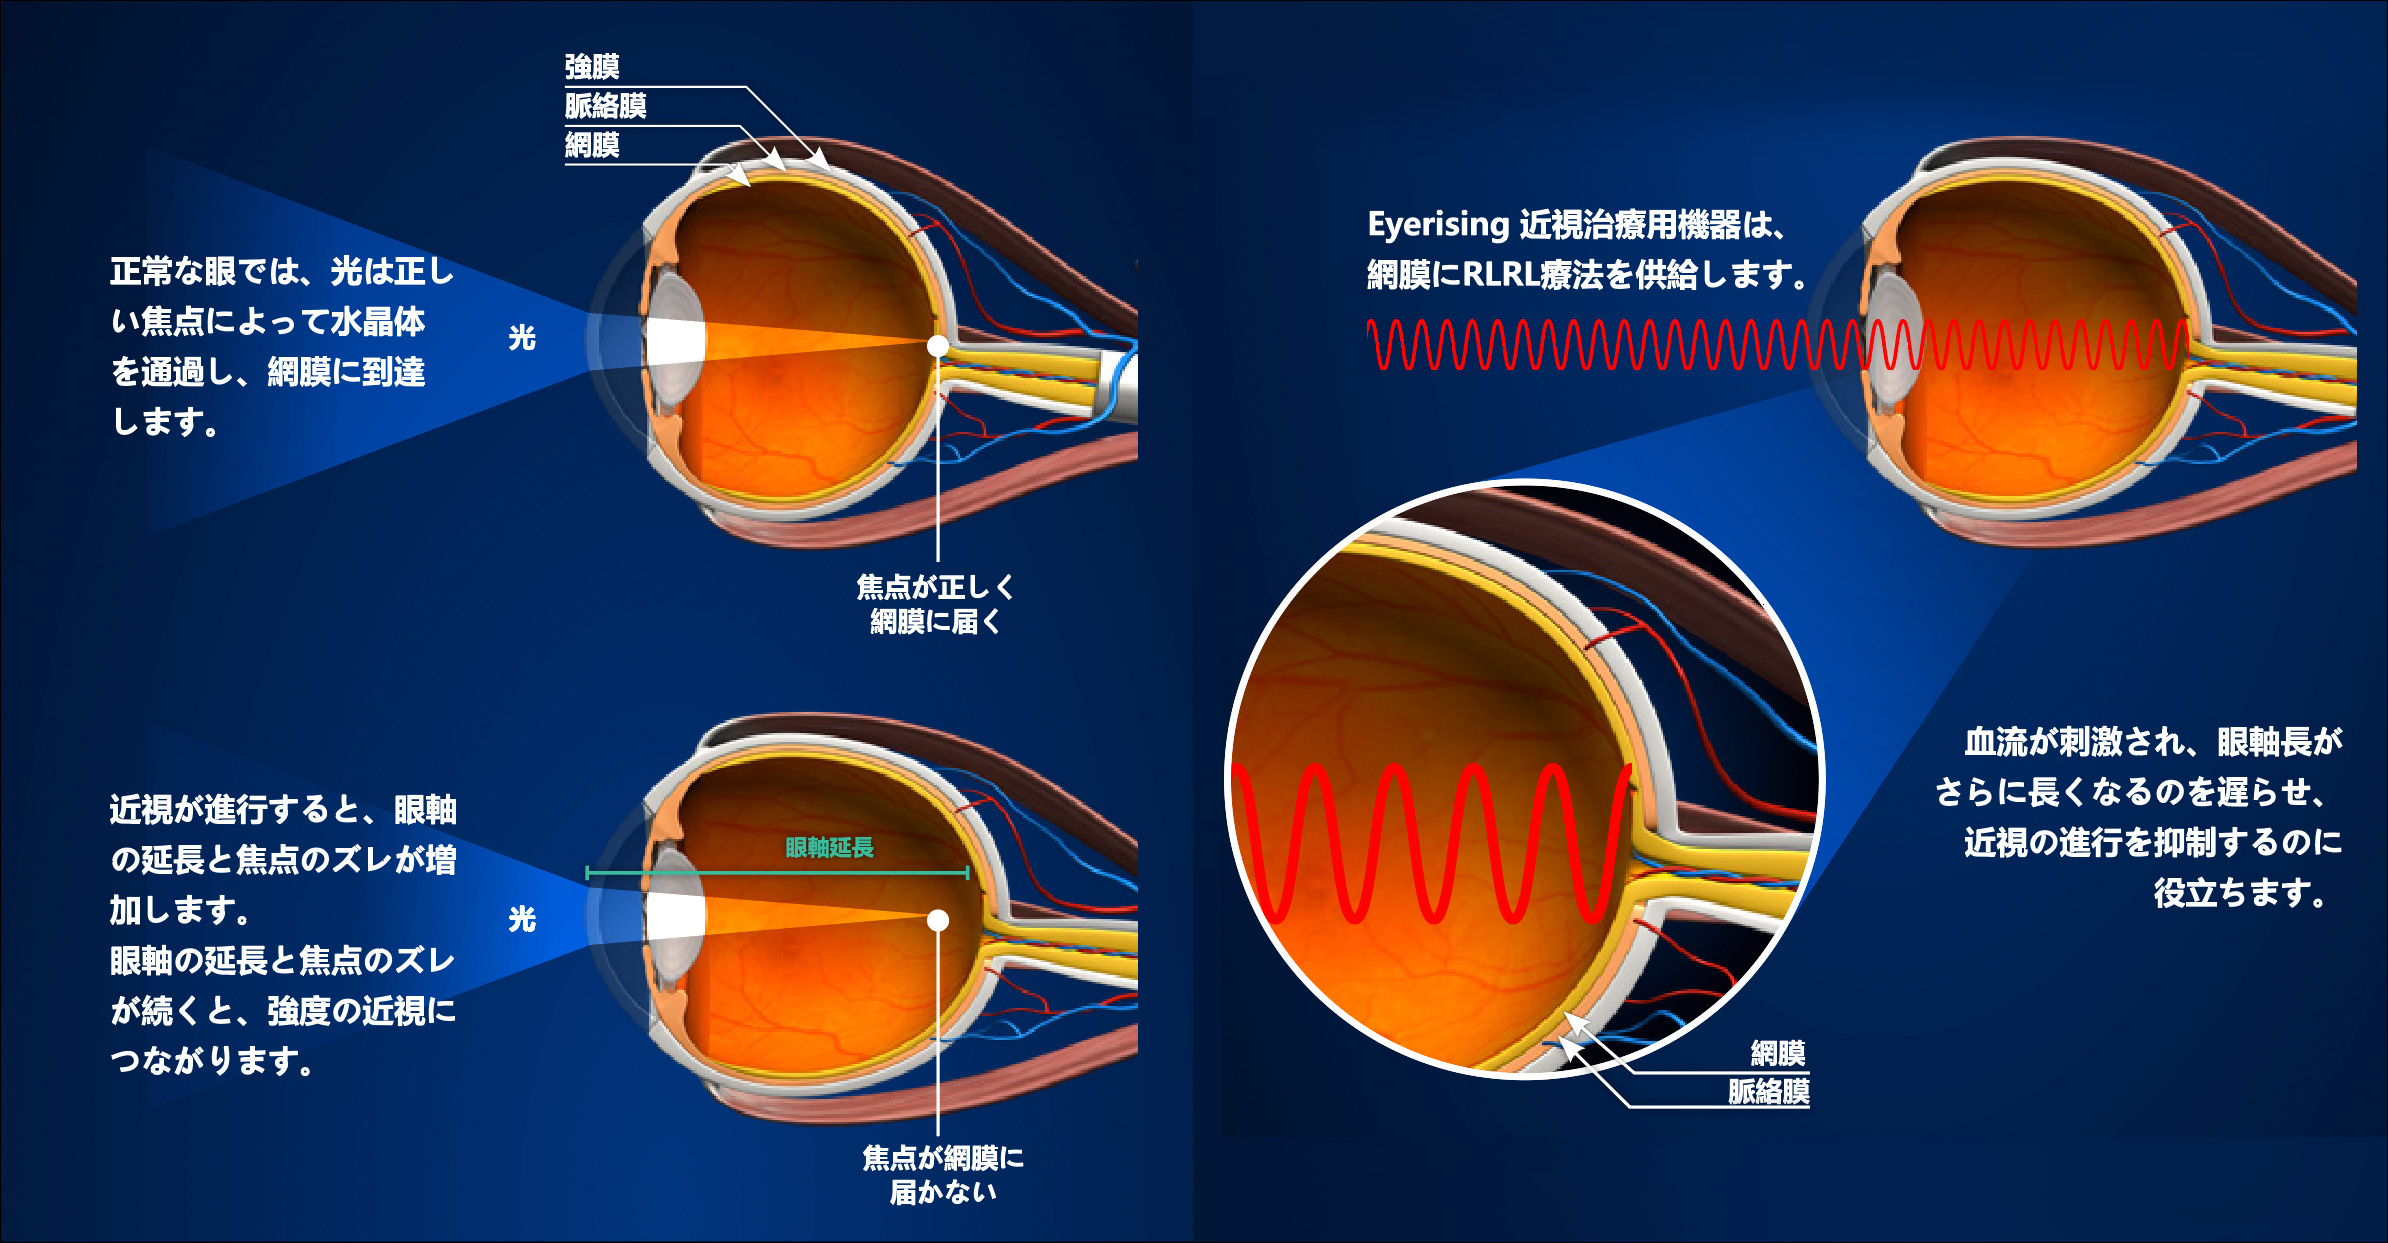 Eyerising（アイライジング）によるレッドライト治療法が機能する仕組みの説明画像